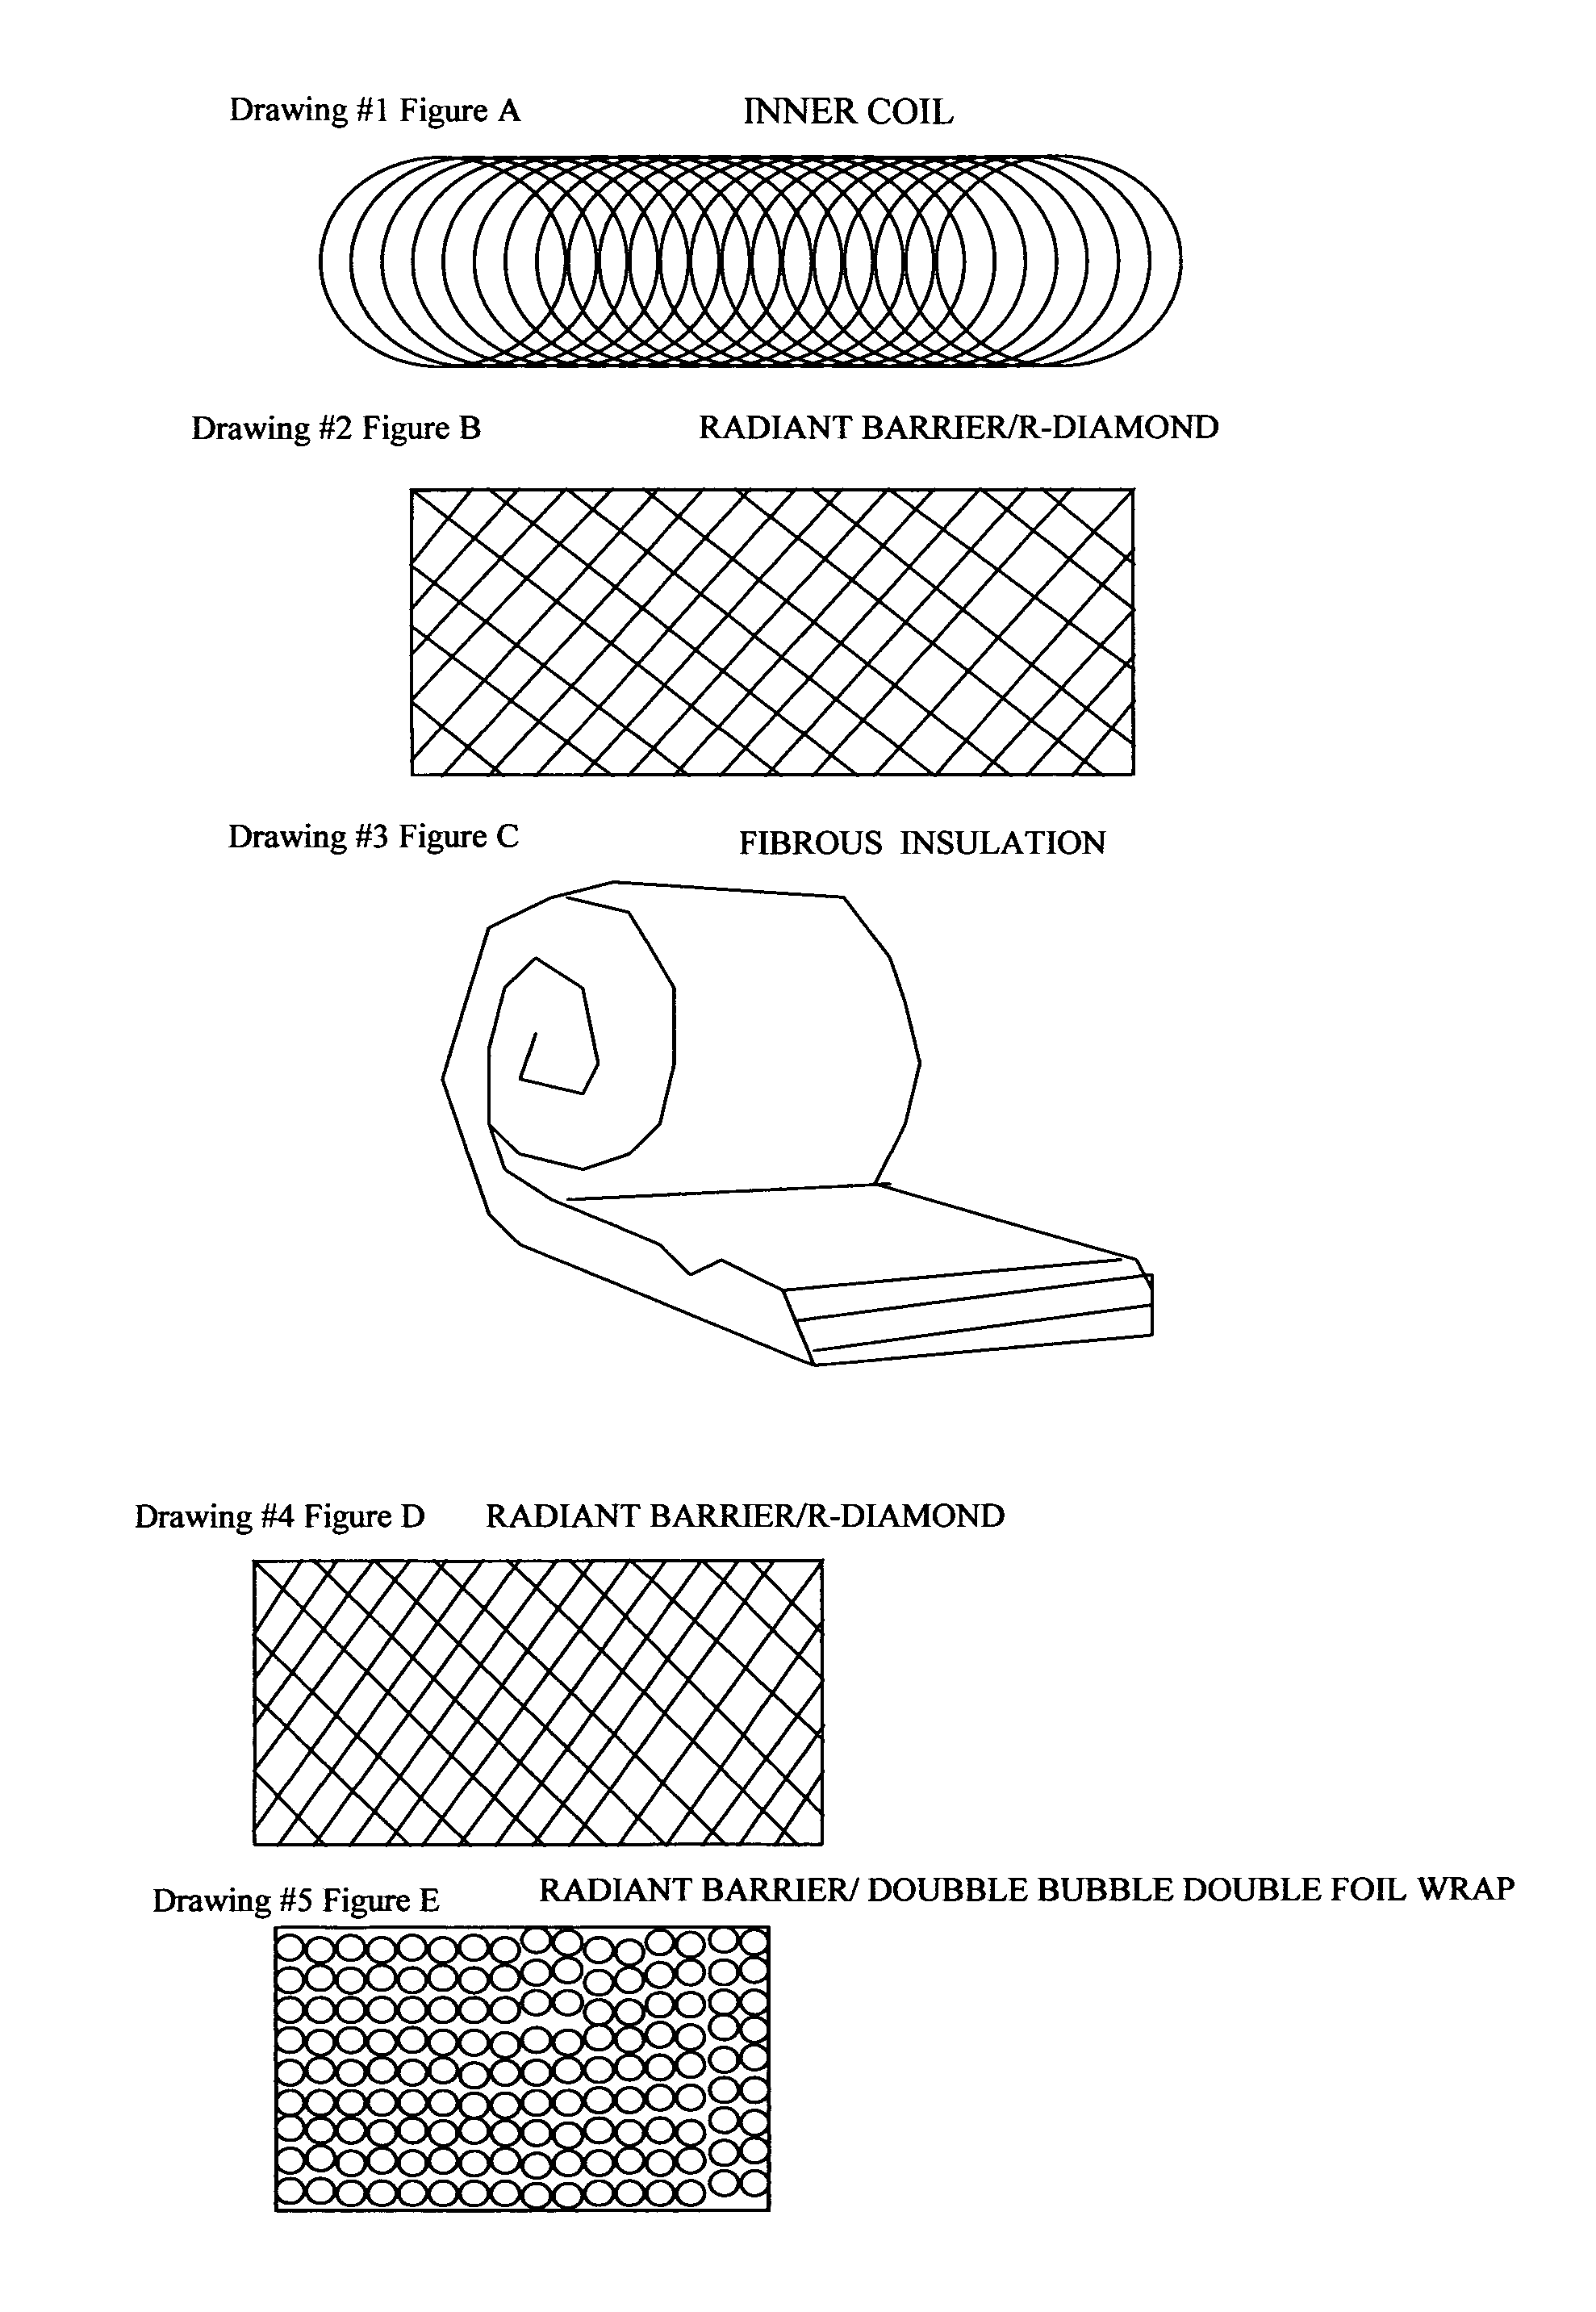 Low emissive radiant barrier flex (LOW-E FLEX)